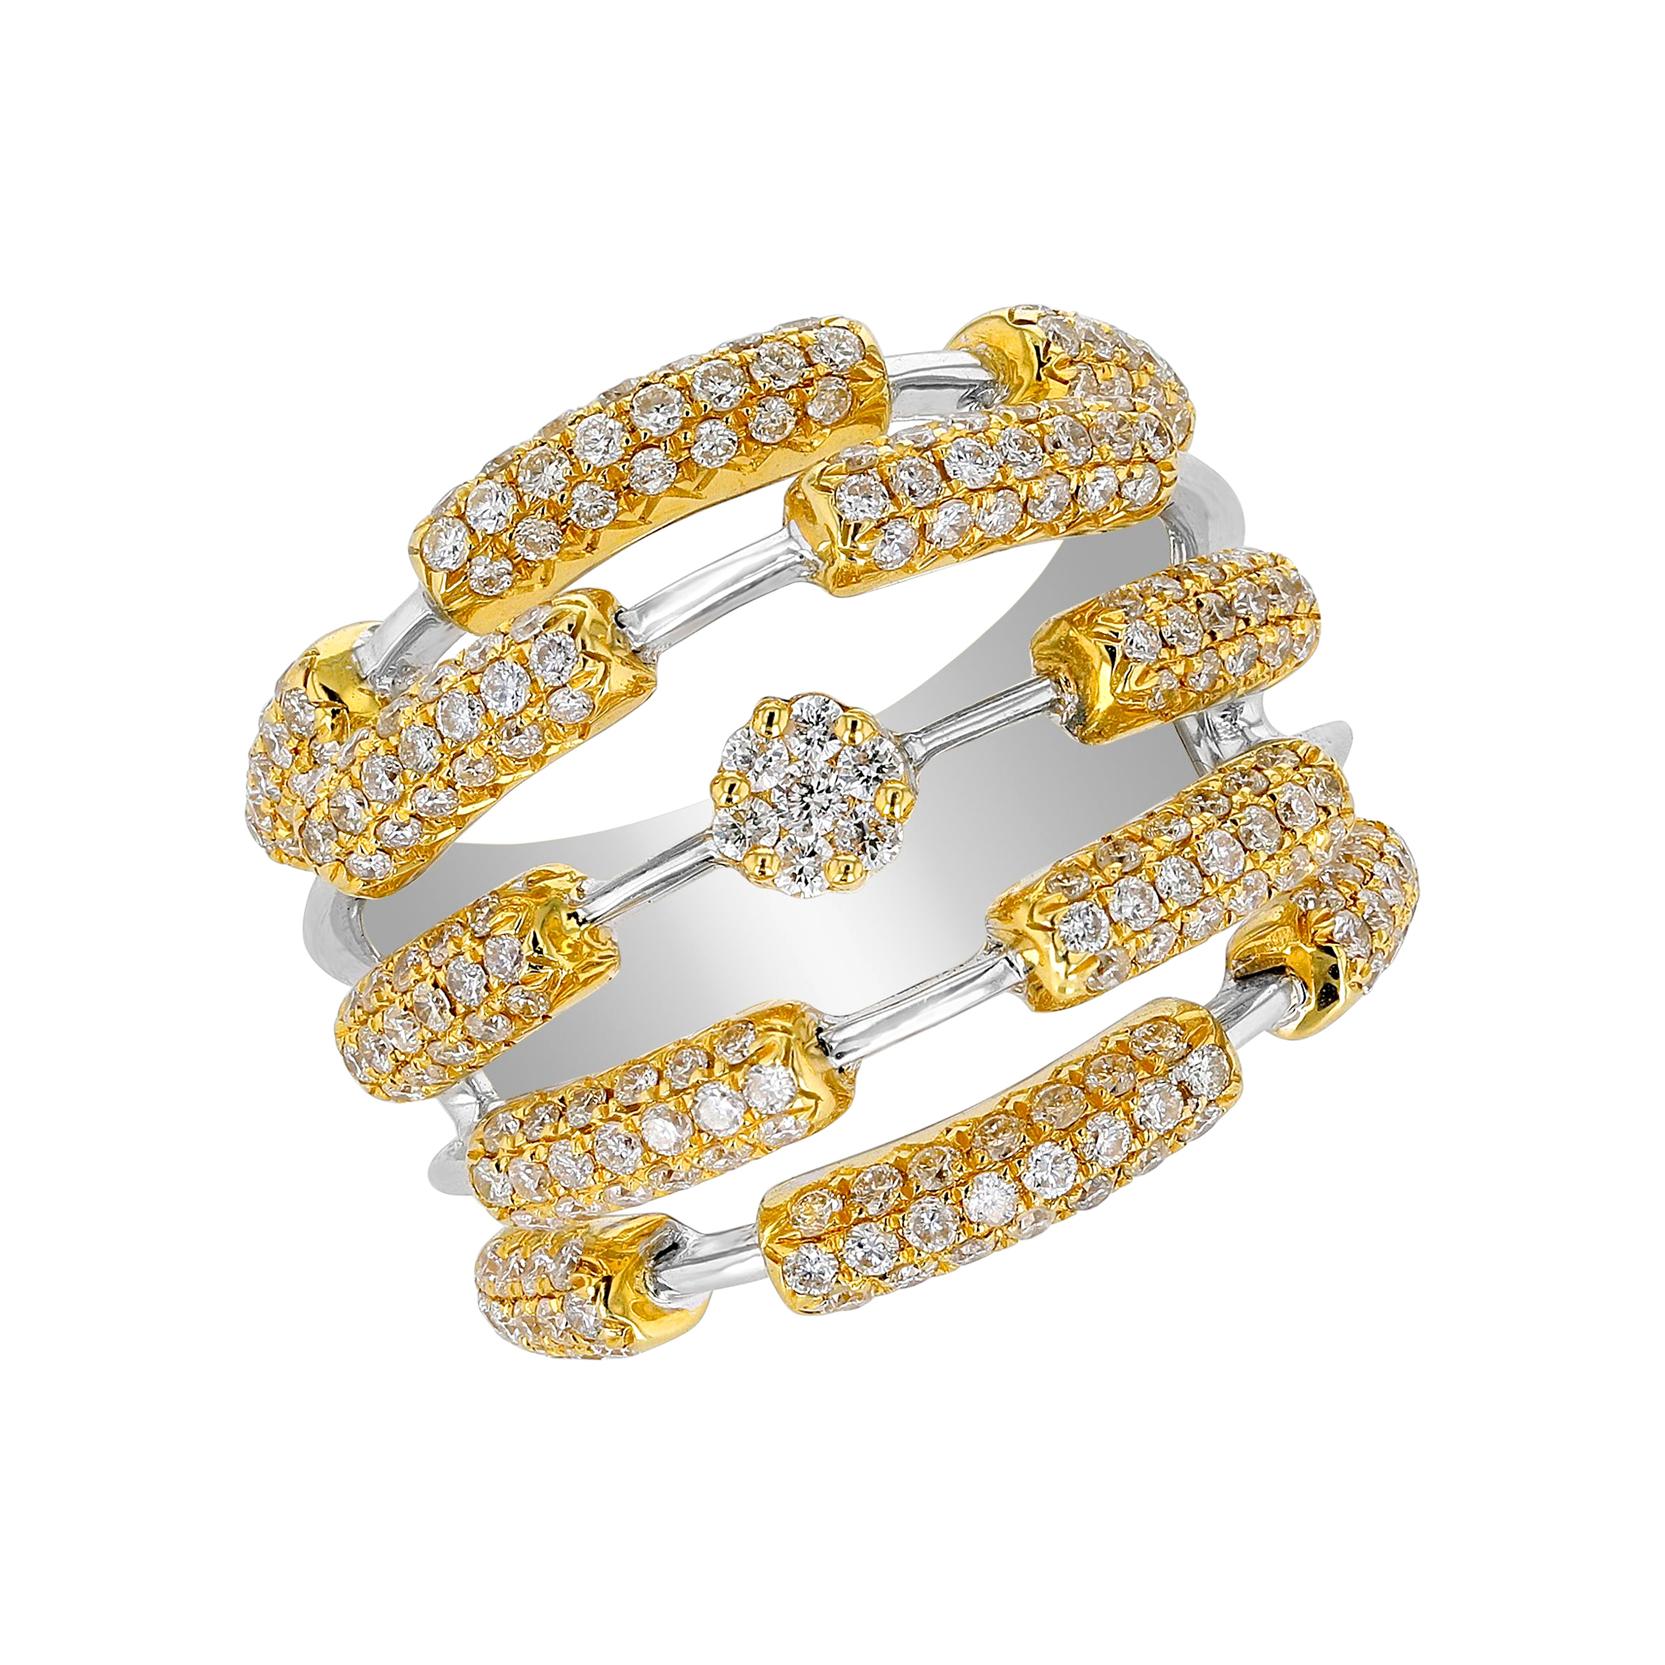 Amwaj Jewelry 18 Karat Yellow Gold and Diamond Ring